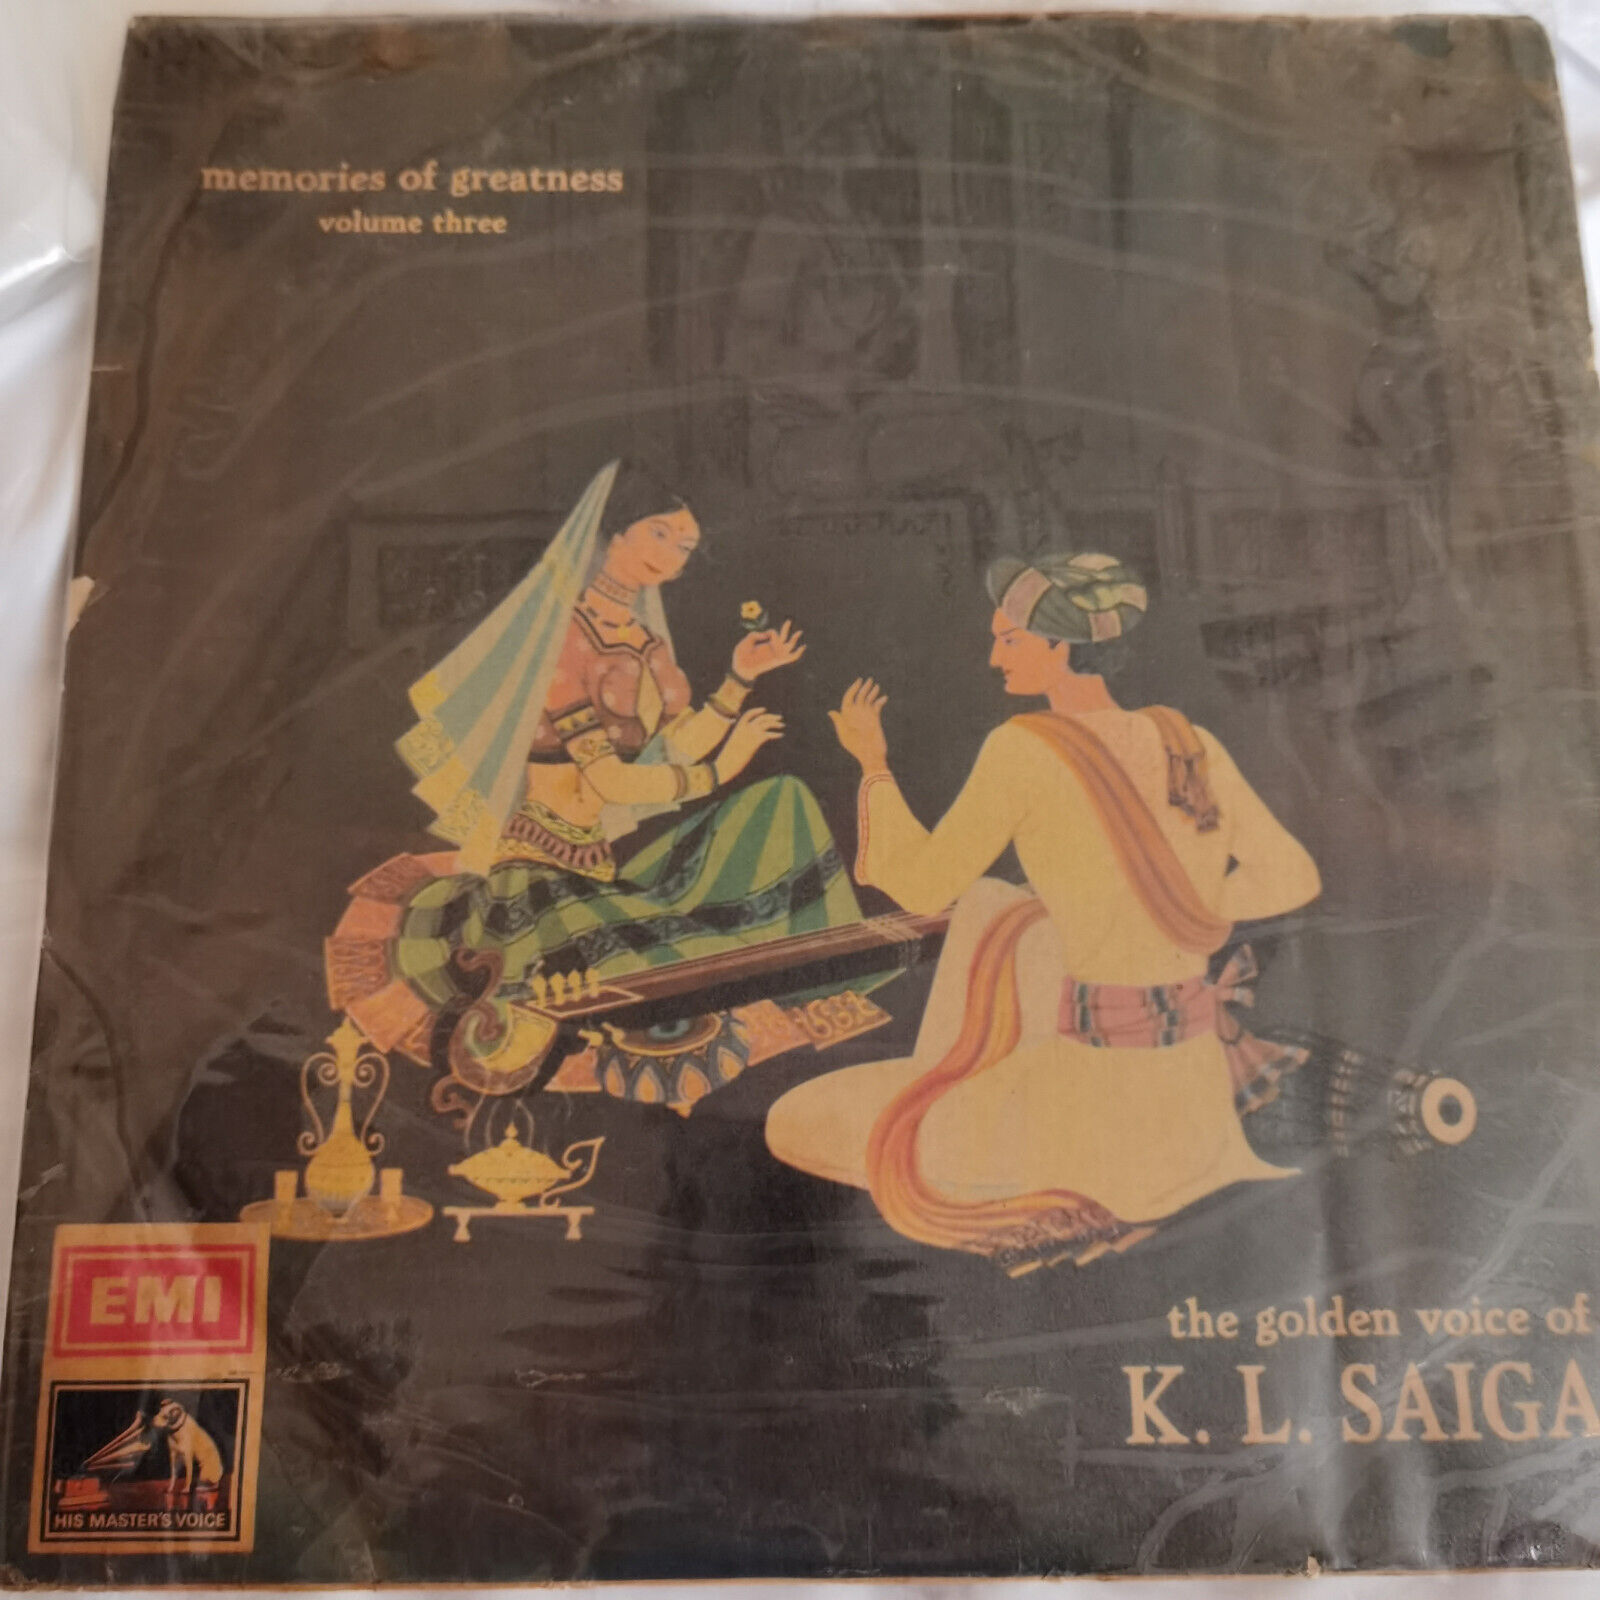 THE GOLDEN VOICE OF KL SAIGAL HMV DISC 12" LP VINYL RECORD VERY RARE LKDA7